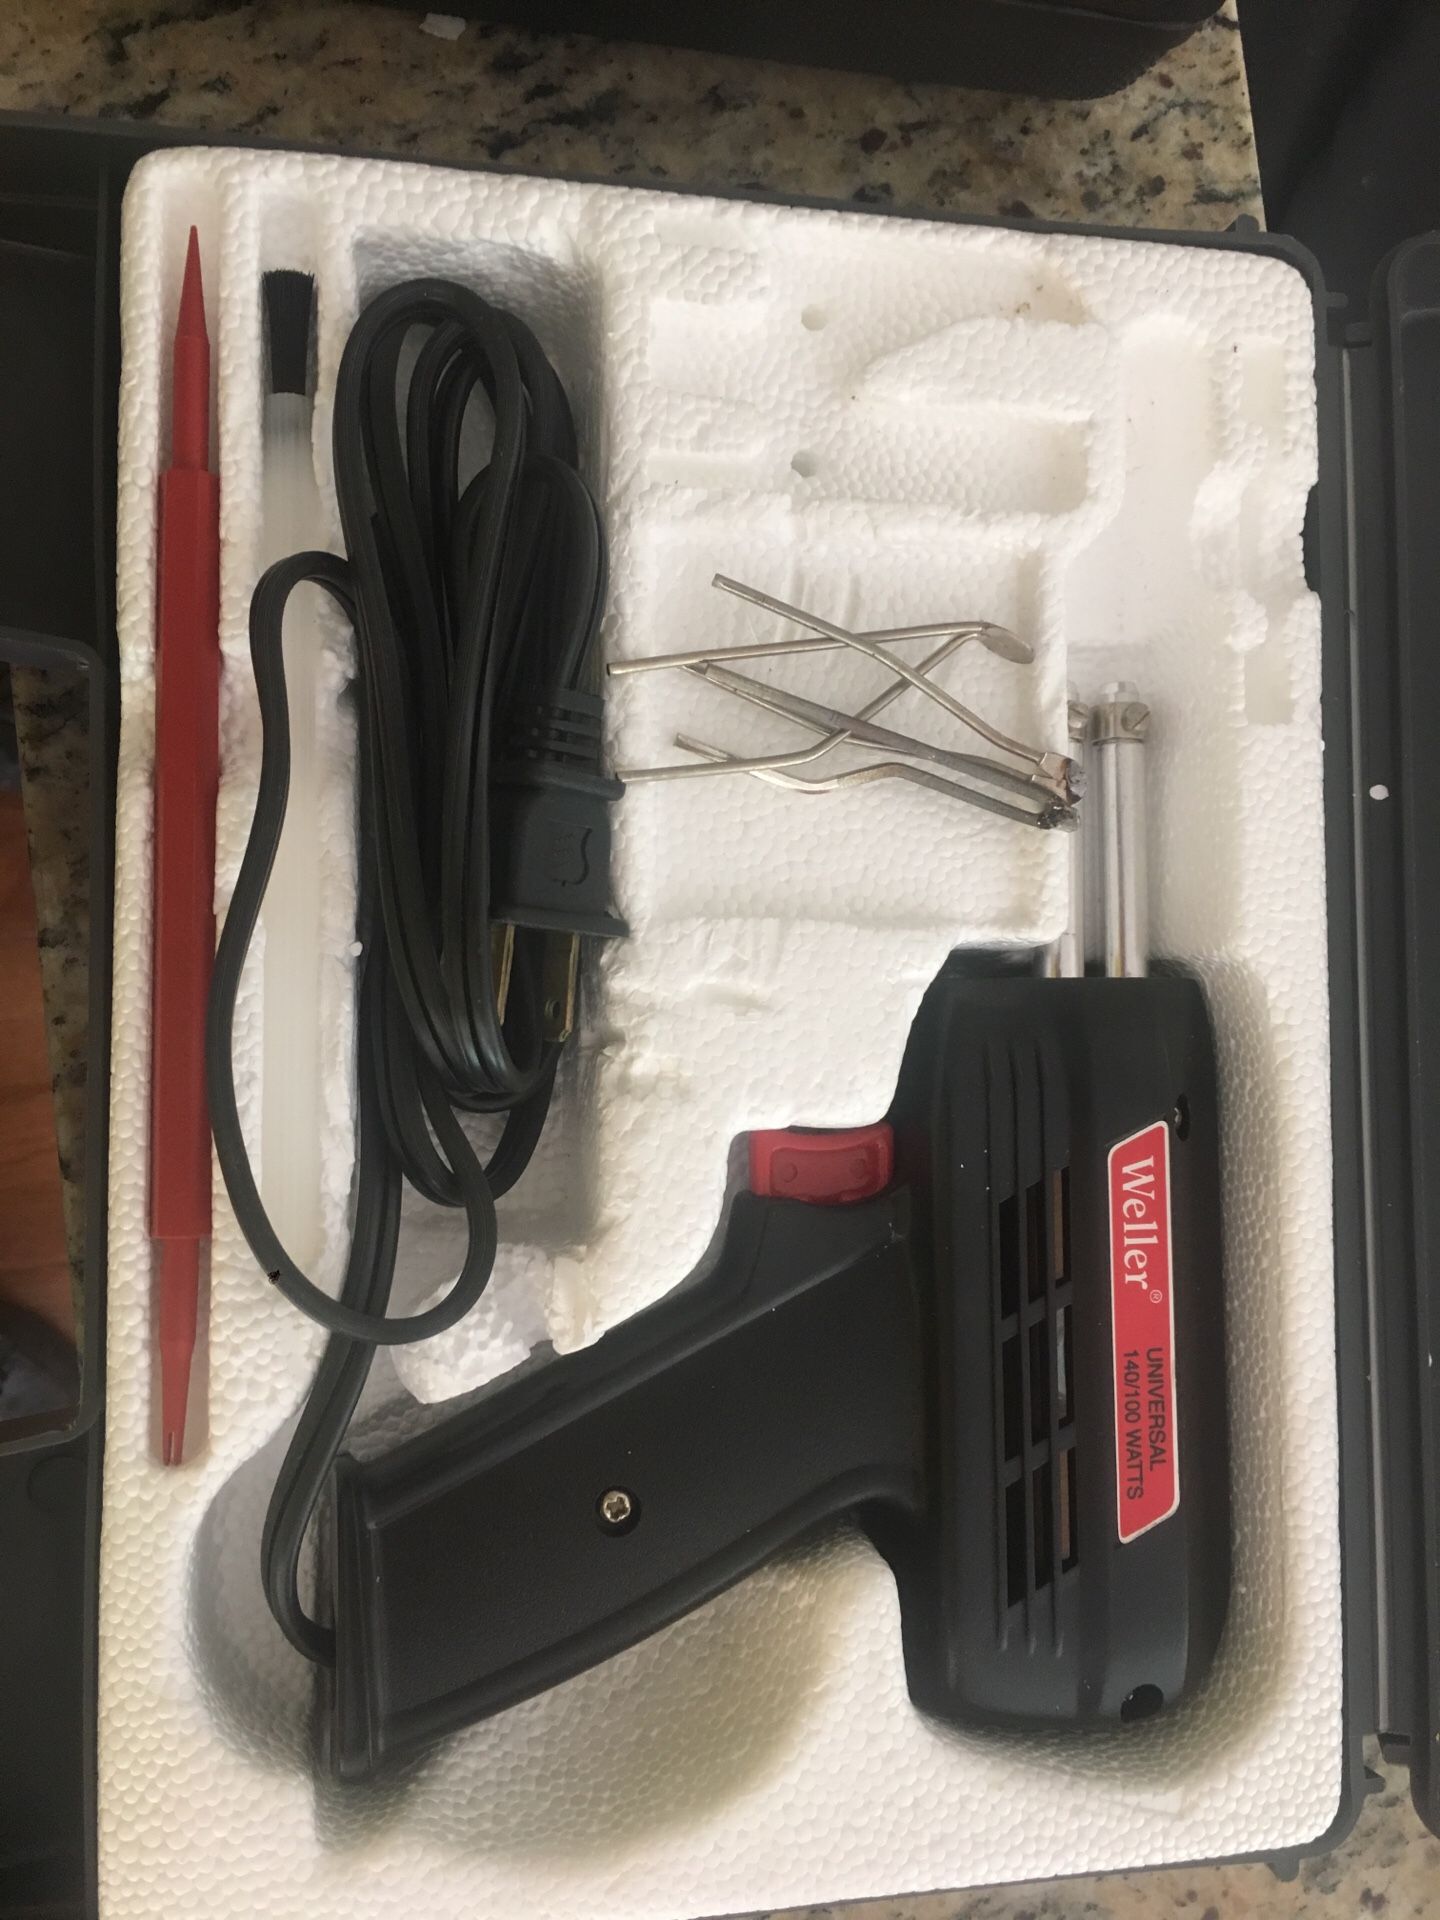 Weller soldering gun